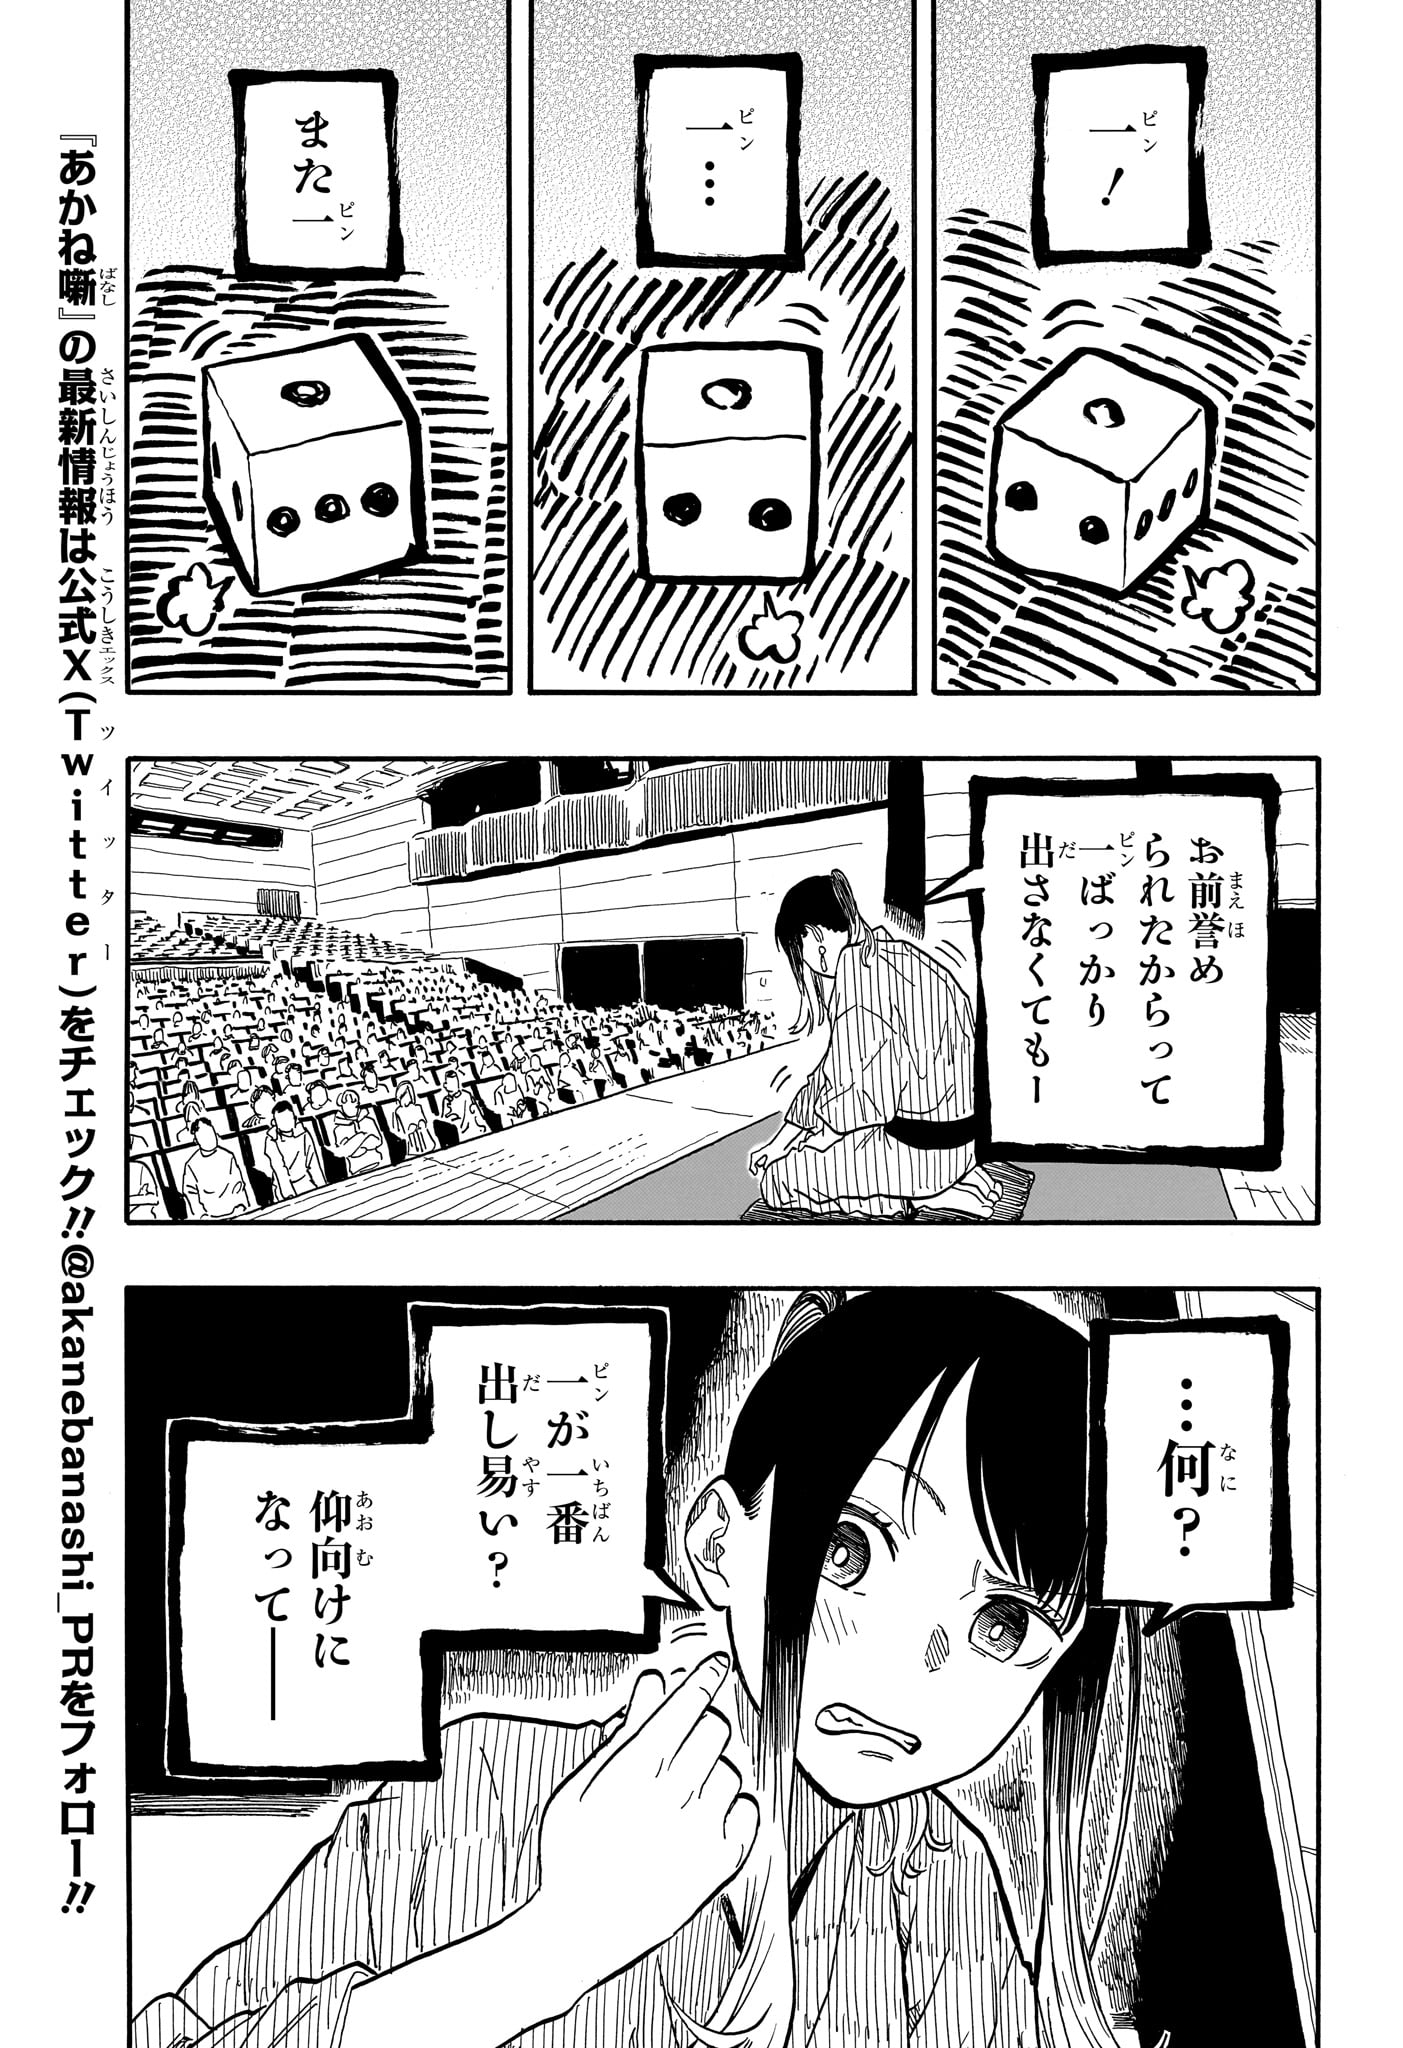 Akane-Banashi - Chapter 99 - Page 3